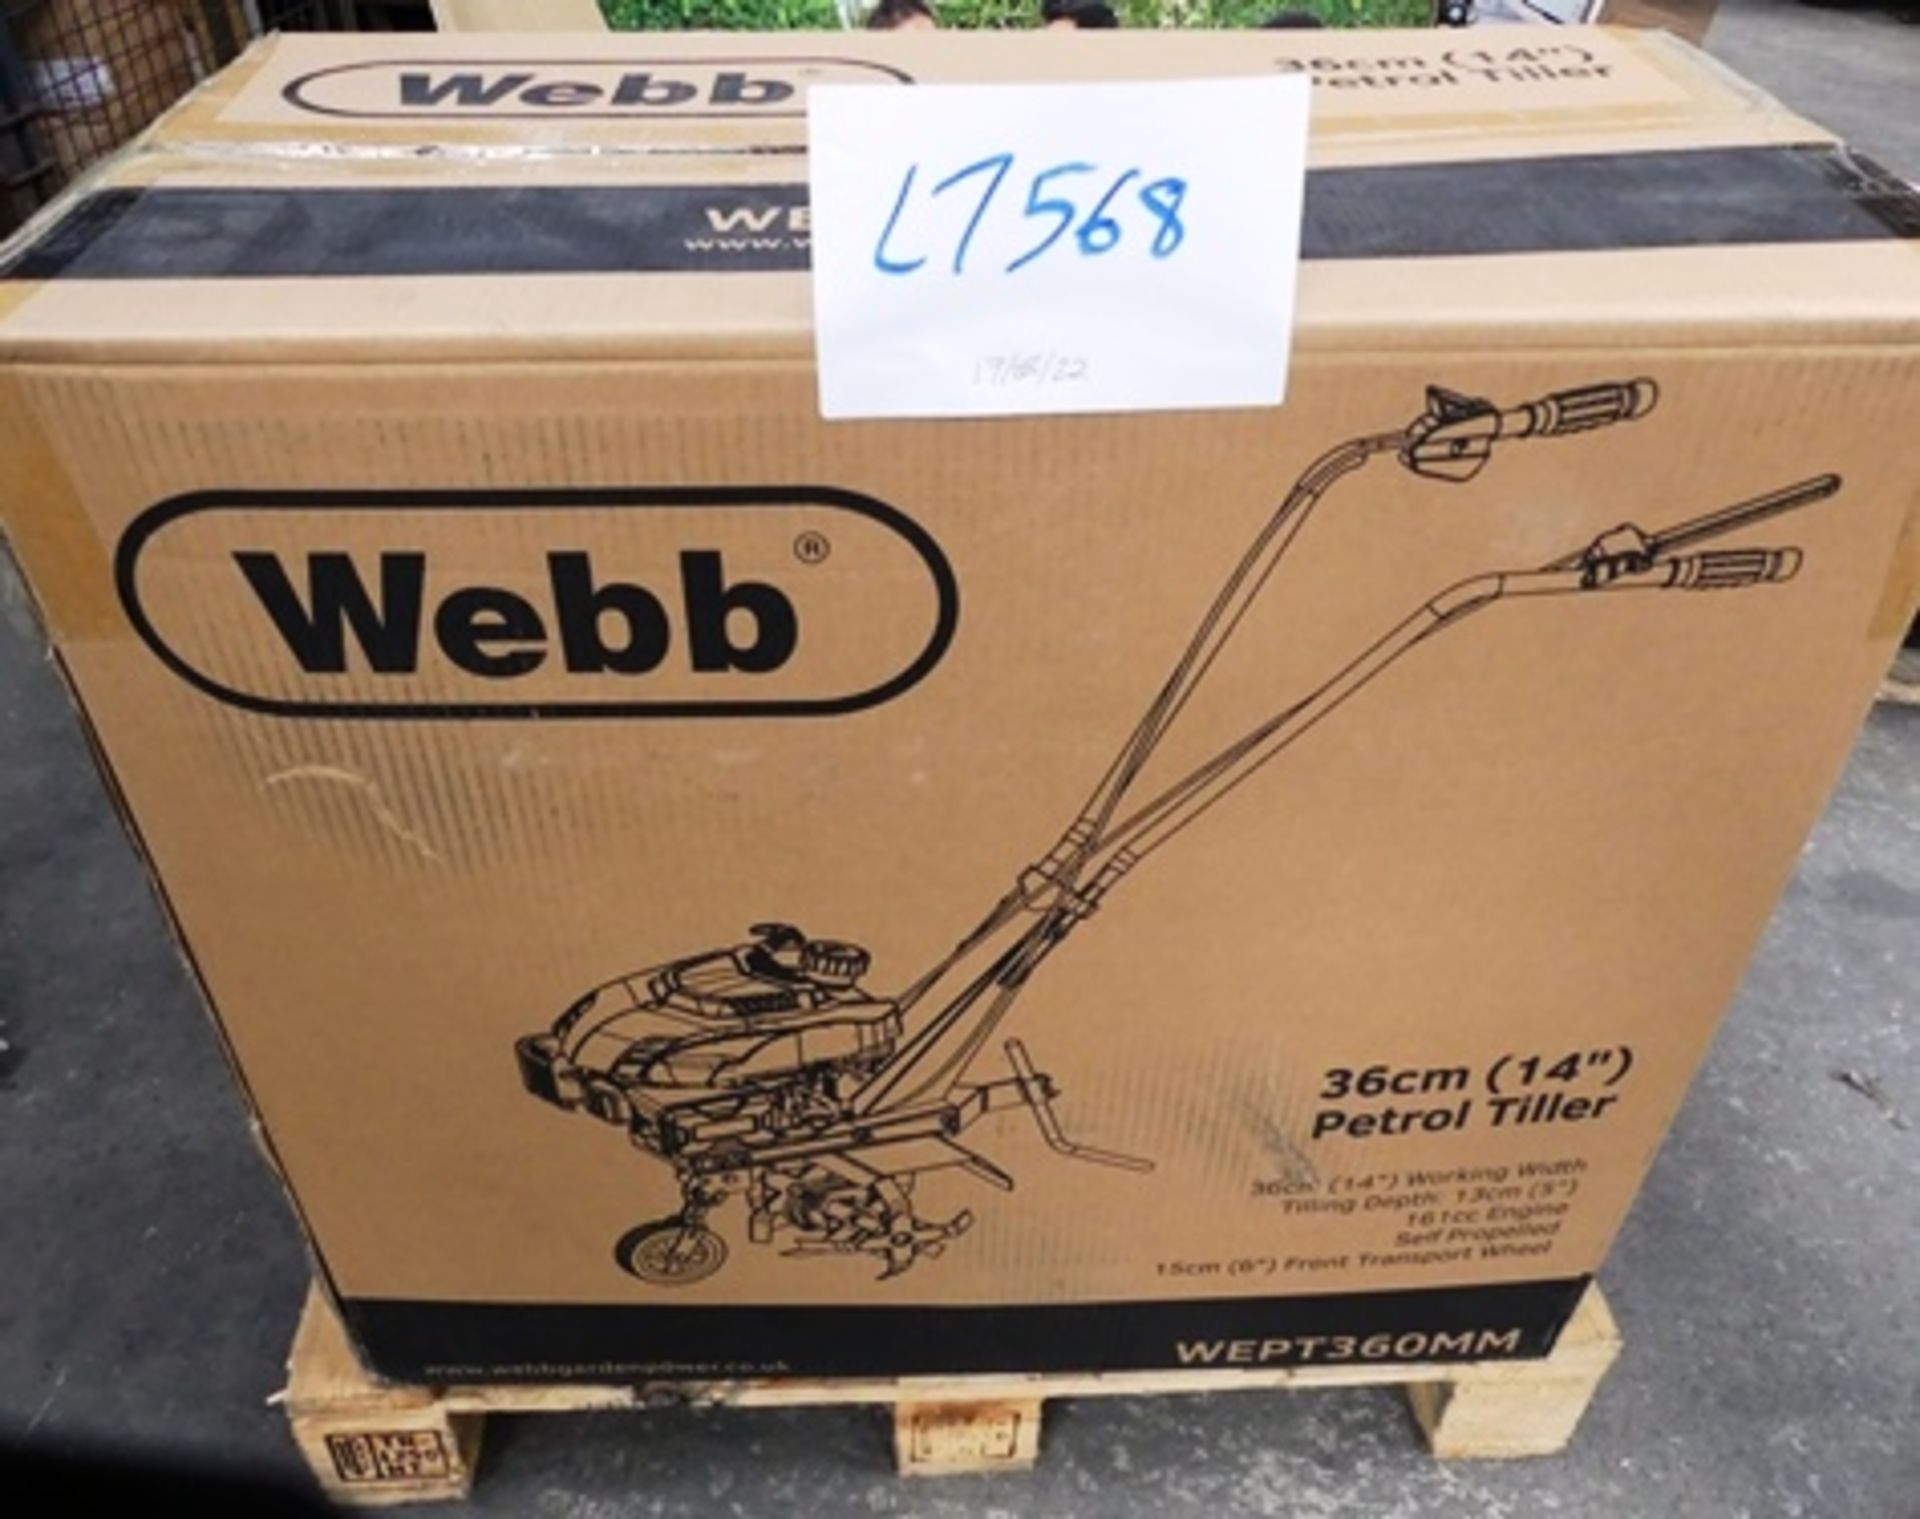 1 x Webb 36cm (14") petrol tiller, Model WEPT360MM - Sealed new in box (GS35)